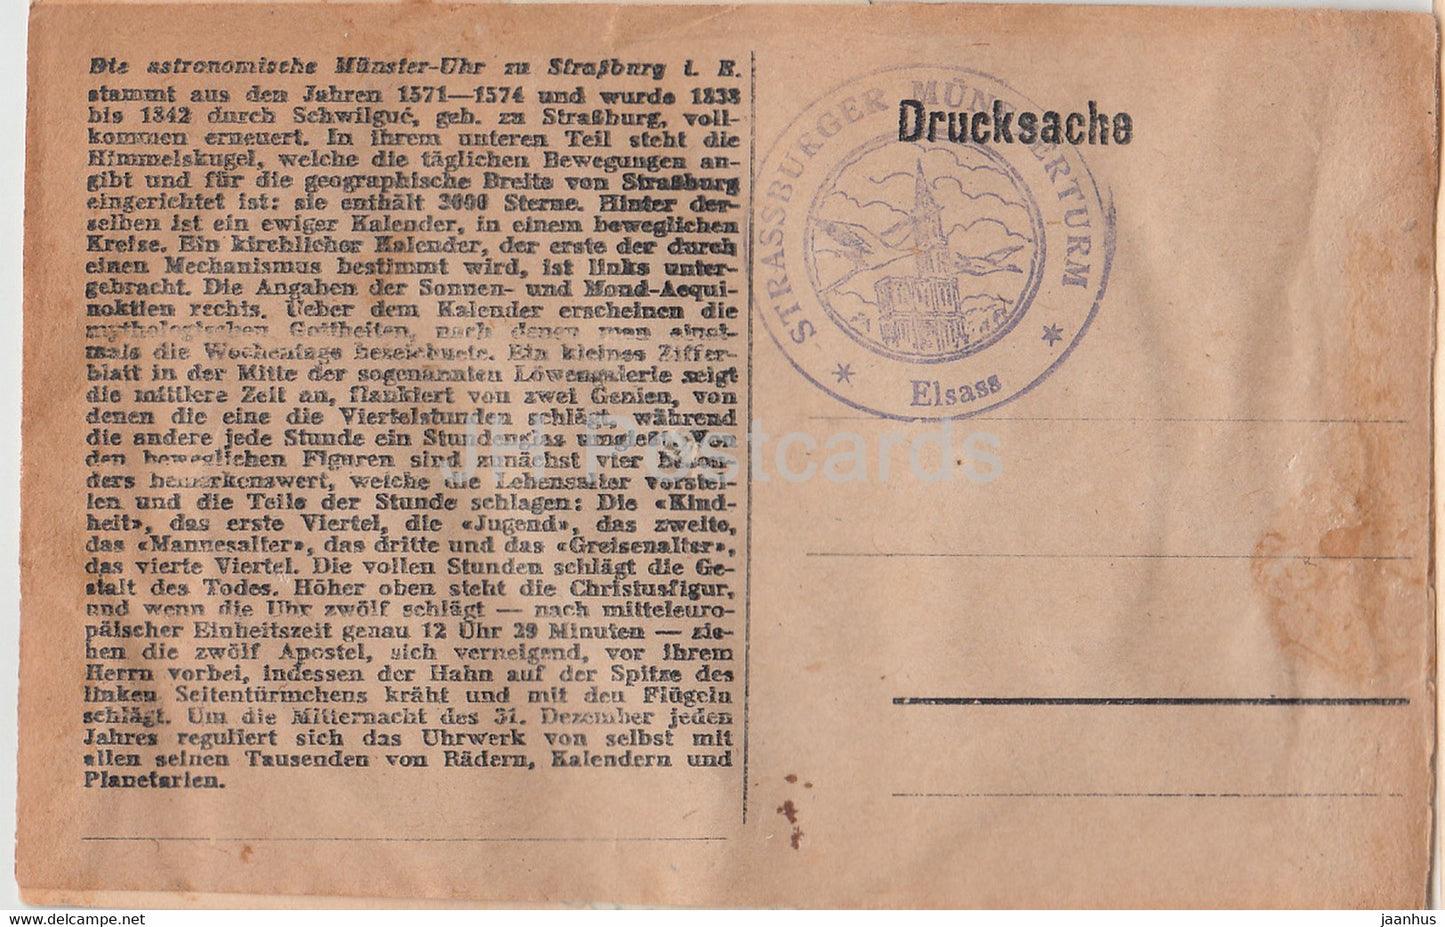 Die Astronomische Munster Uhr zu Strasbourg - old postcard - France - unused